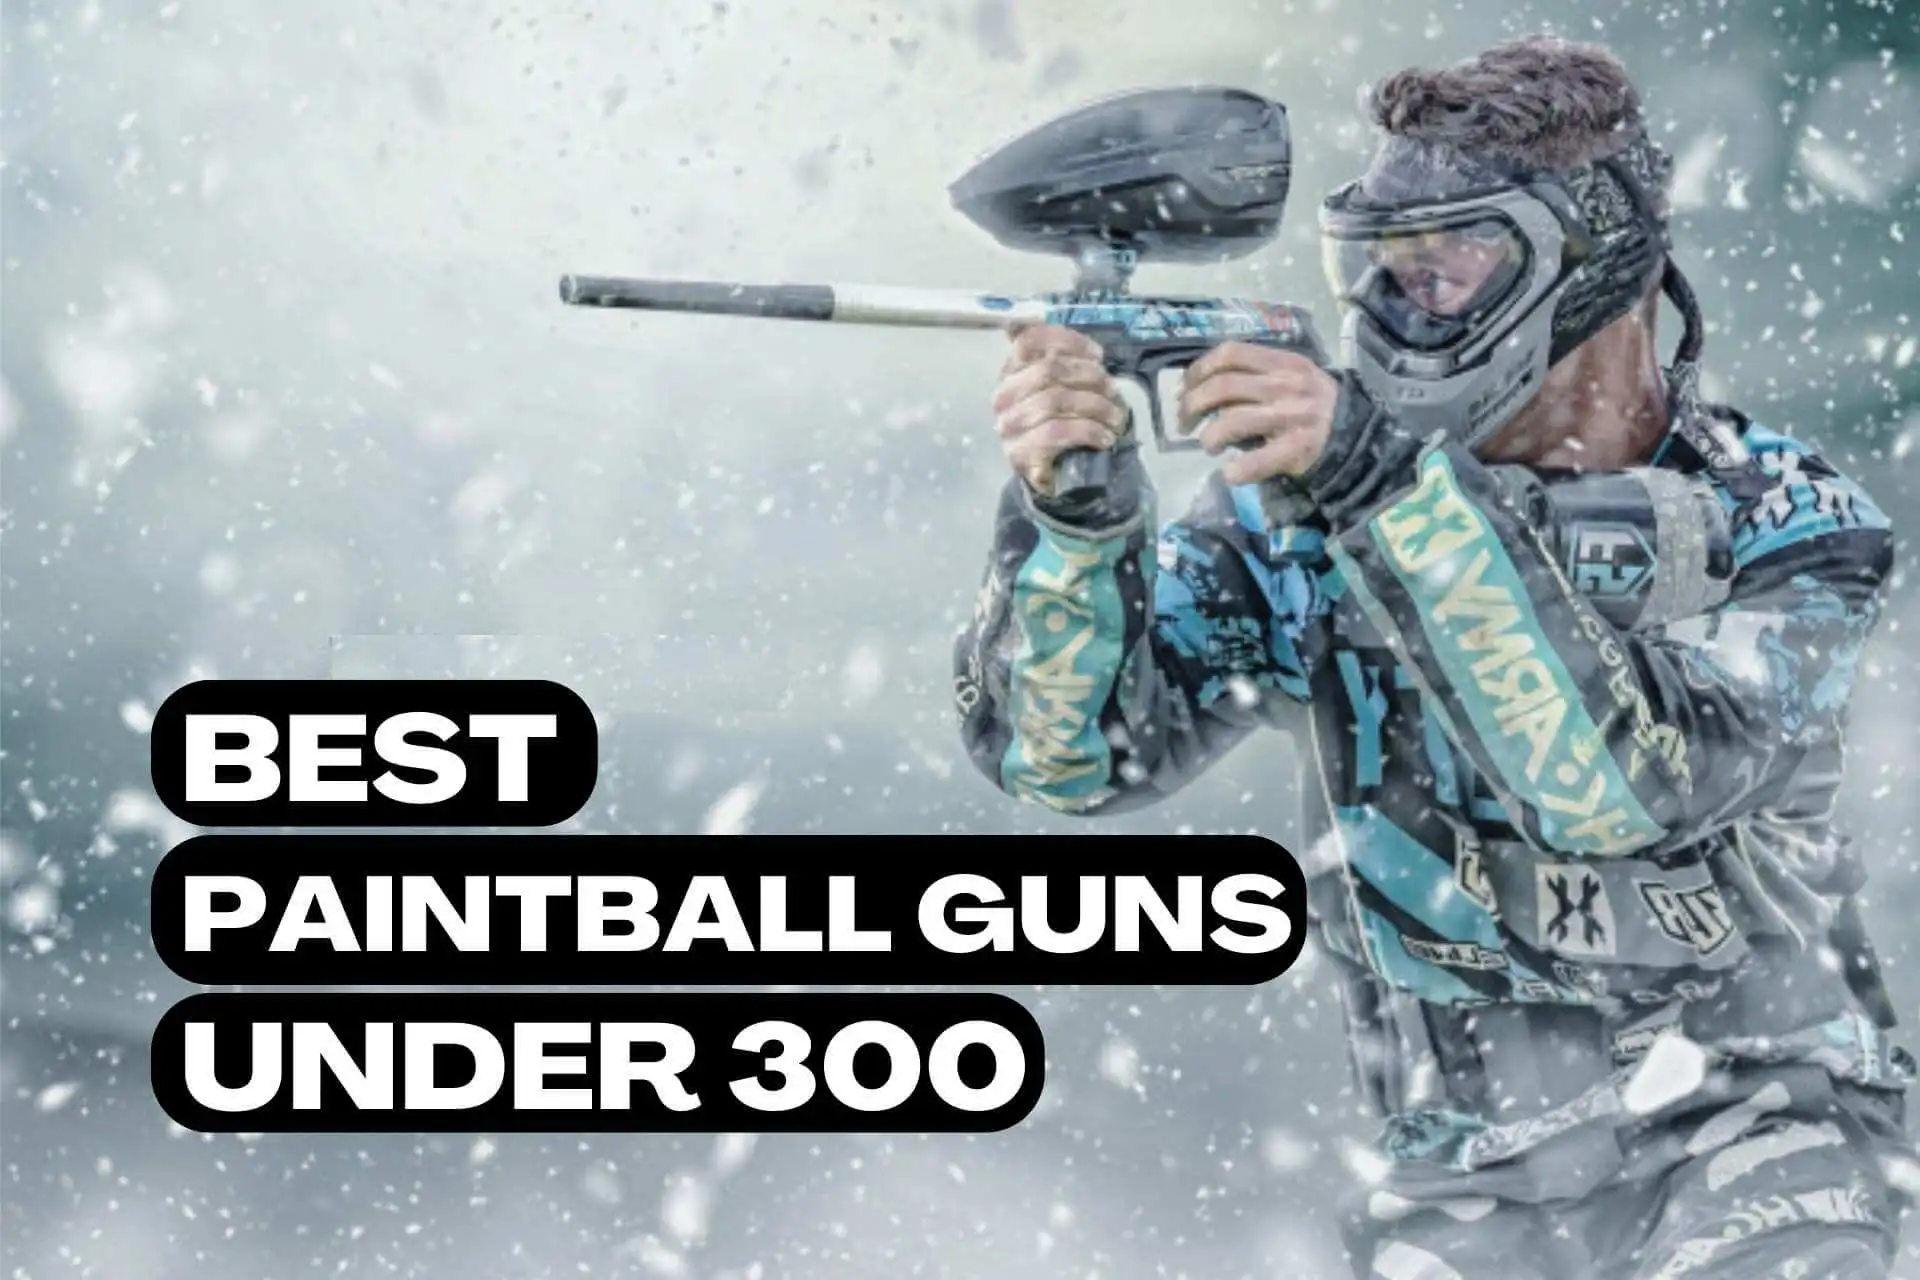 Best paintball guns under 300